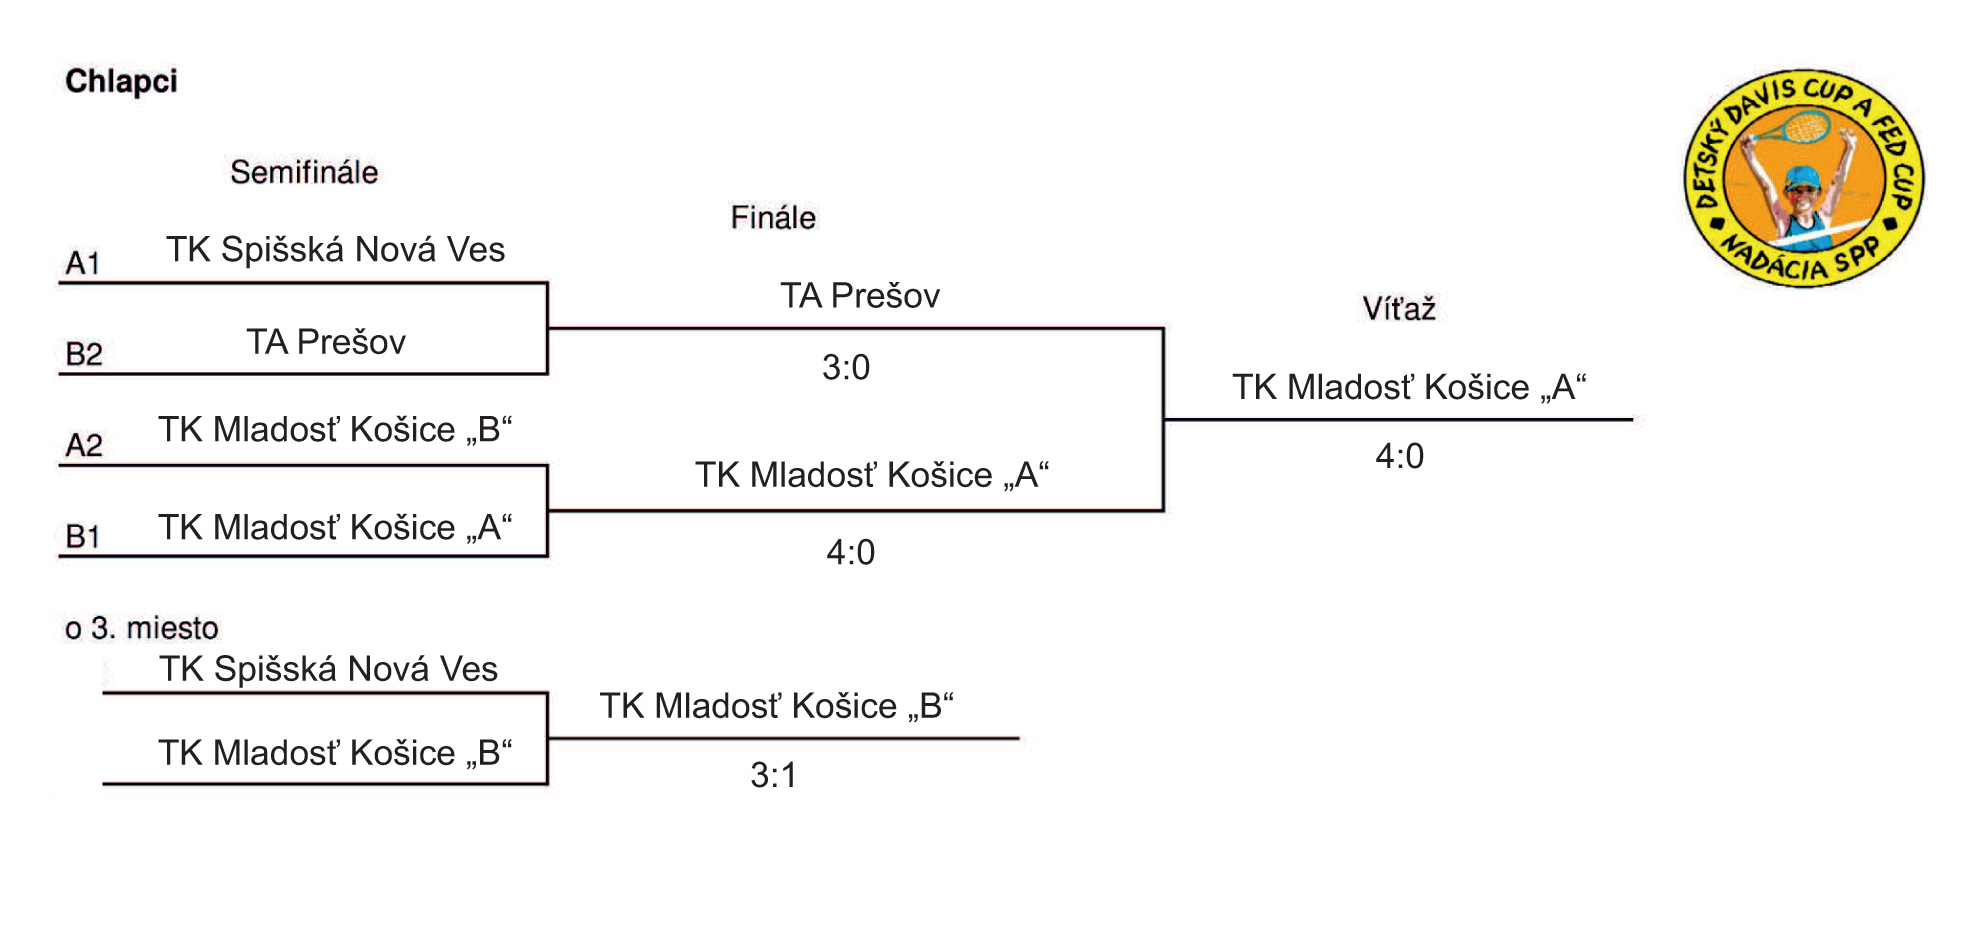 Výsledky CHLAPCI - DAVIS CUP regionálne finále SNV 2013 